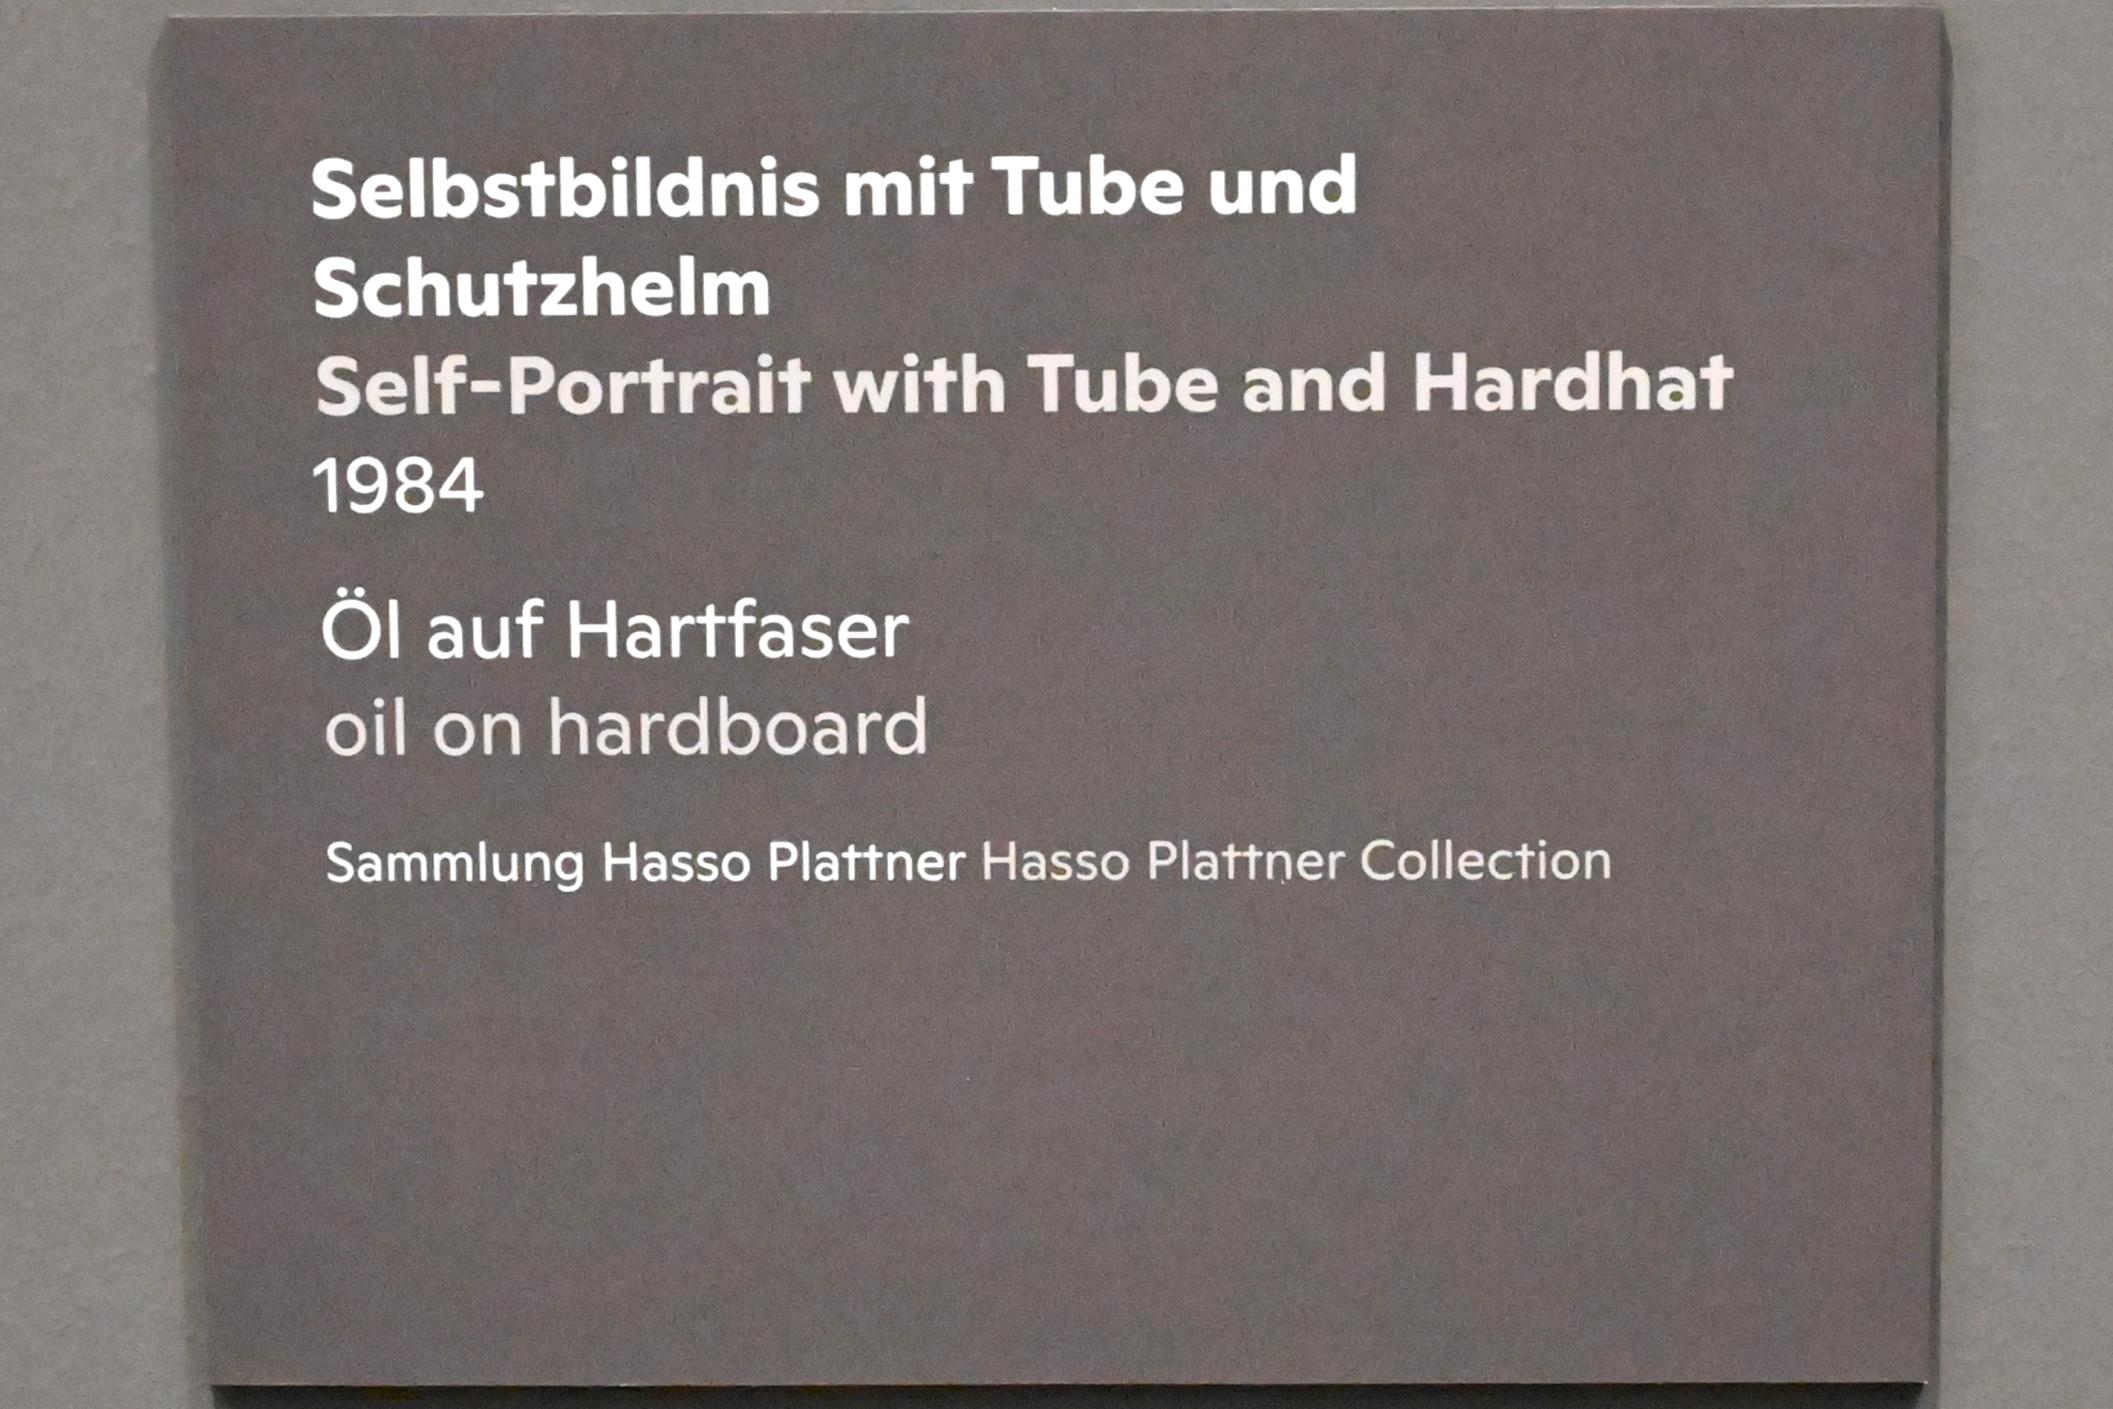 Willi Sitte (1938–2002), Selbstbildnis mit Tube und Schutzhelm, Halle (Saale), Kunstmuseum Moritzburg, Ausstellung "Sittes Welt" vom 03.10.2021 - 06.02.2022, Saal 8, 1984, Bild 2/2